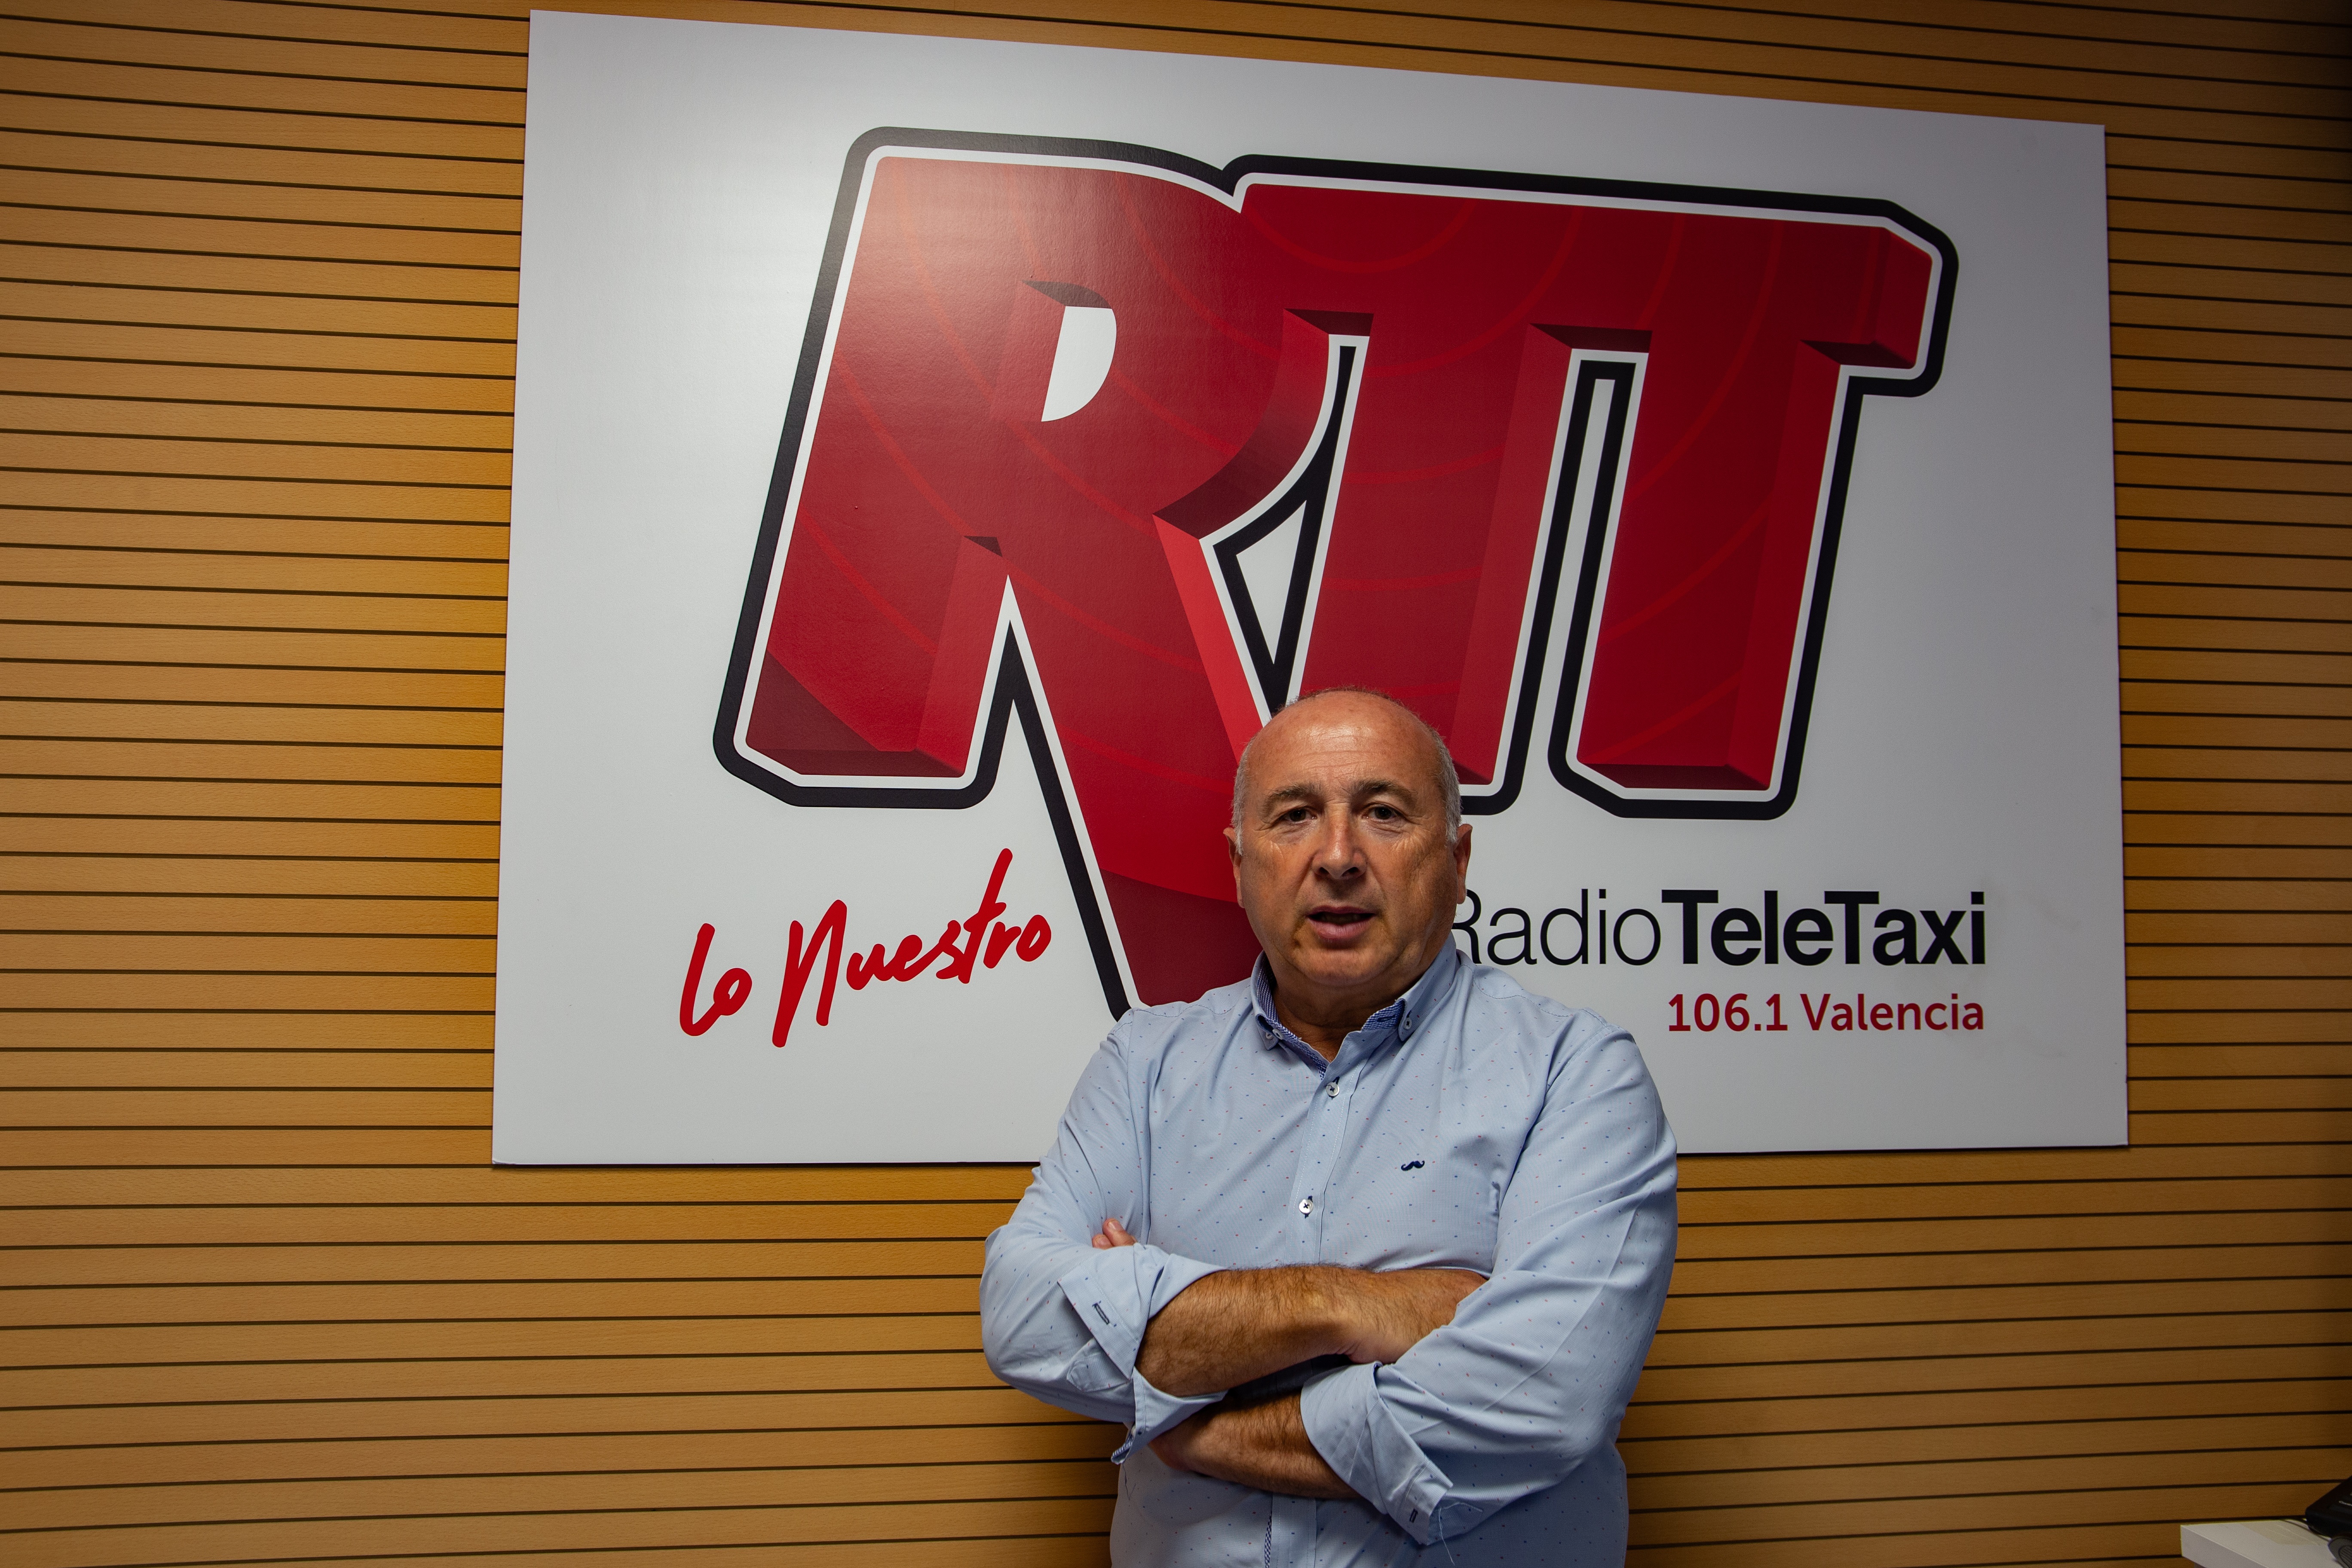 Bandido Brote Distribución Radio Teletaxi Valencia – Radio Teletaxi Valencia